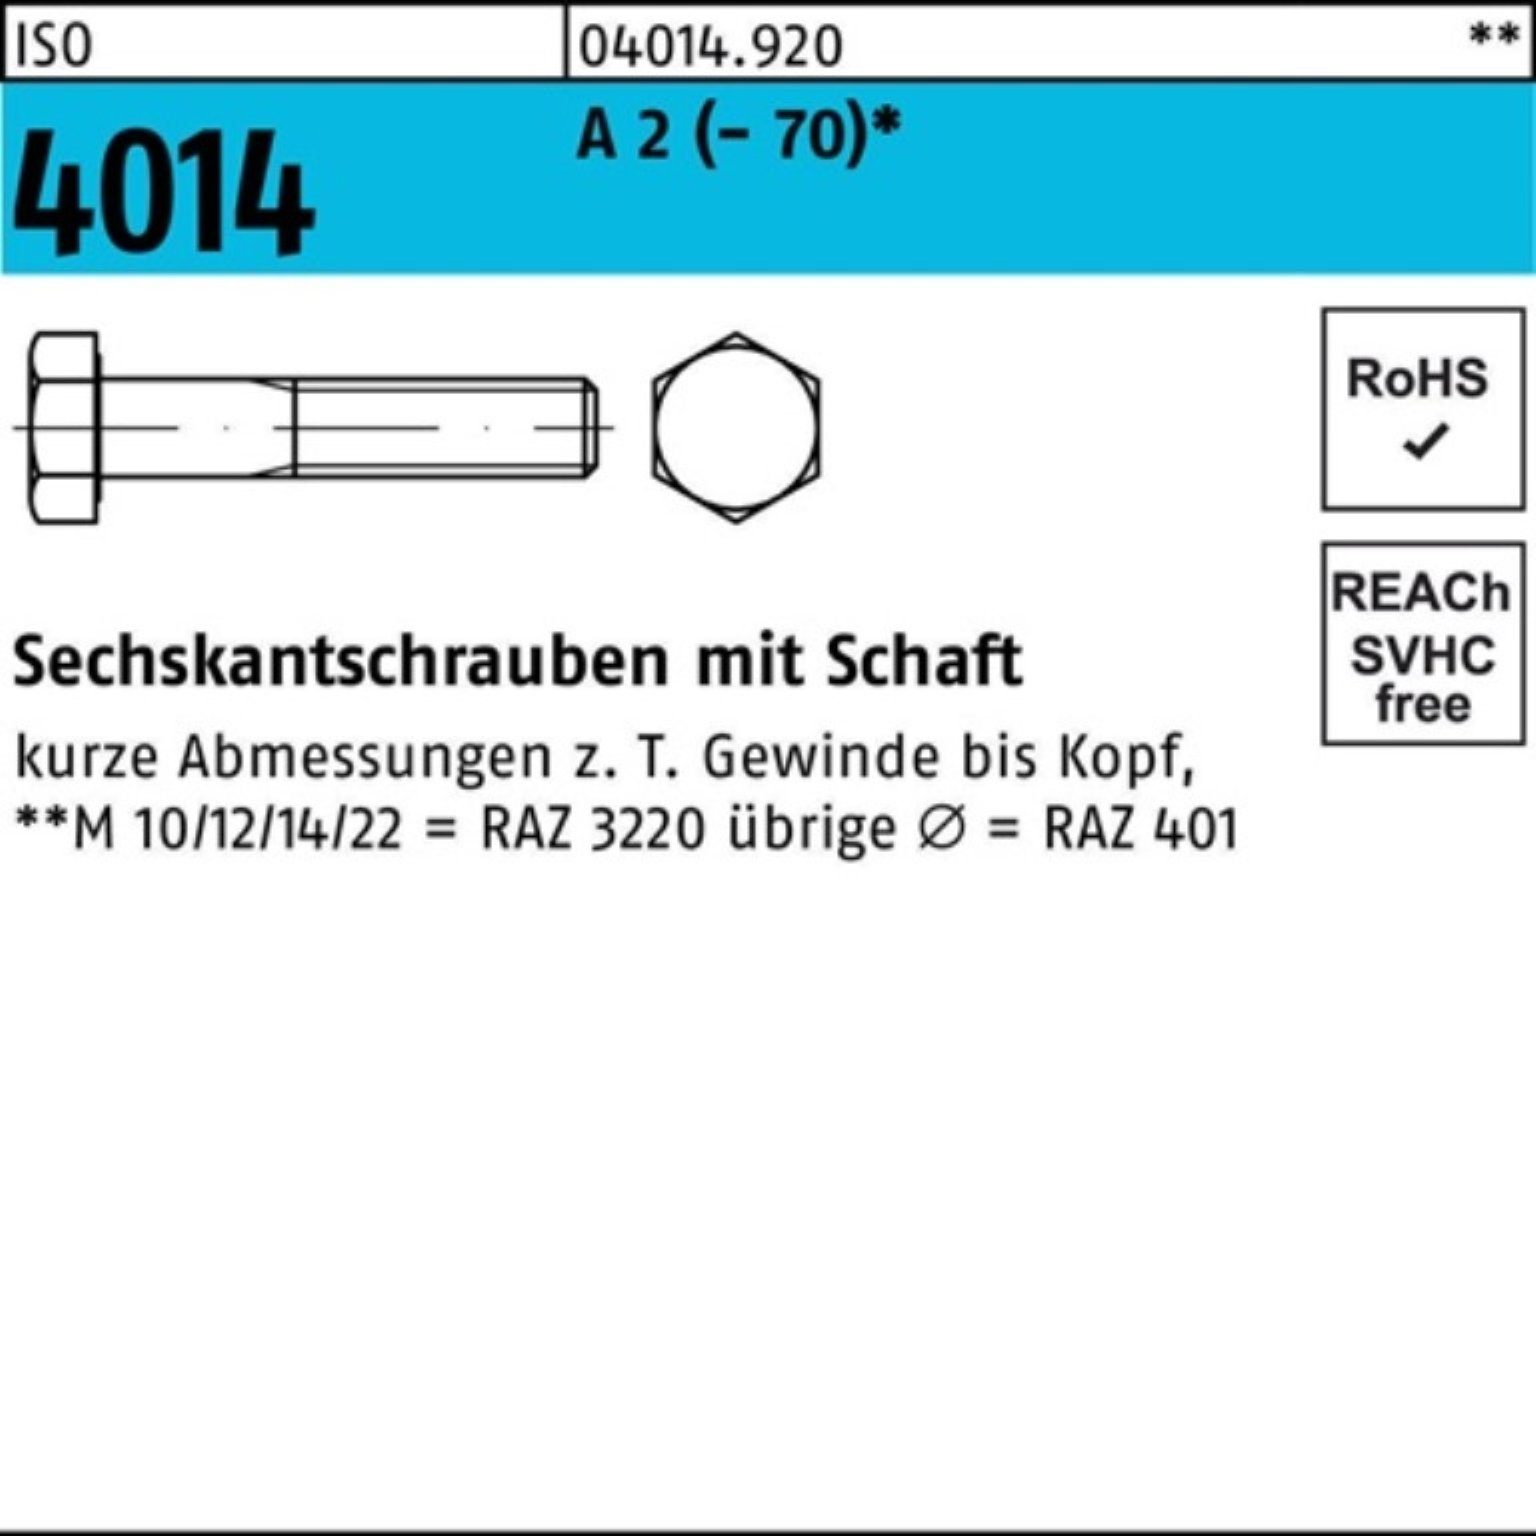 Bufab Sechskantschraube 100er Pack Sechskantschraube ISO 4014 Schaft M22x 80 A 2 (70) 10 St